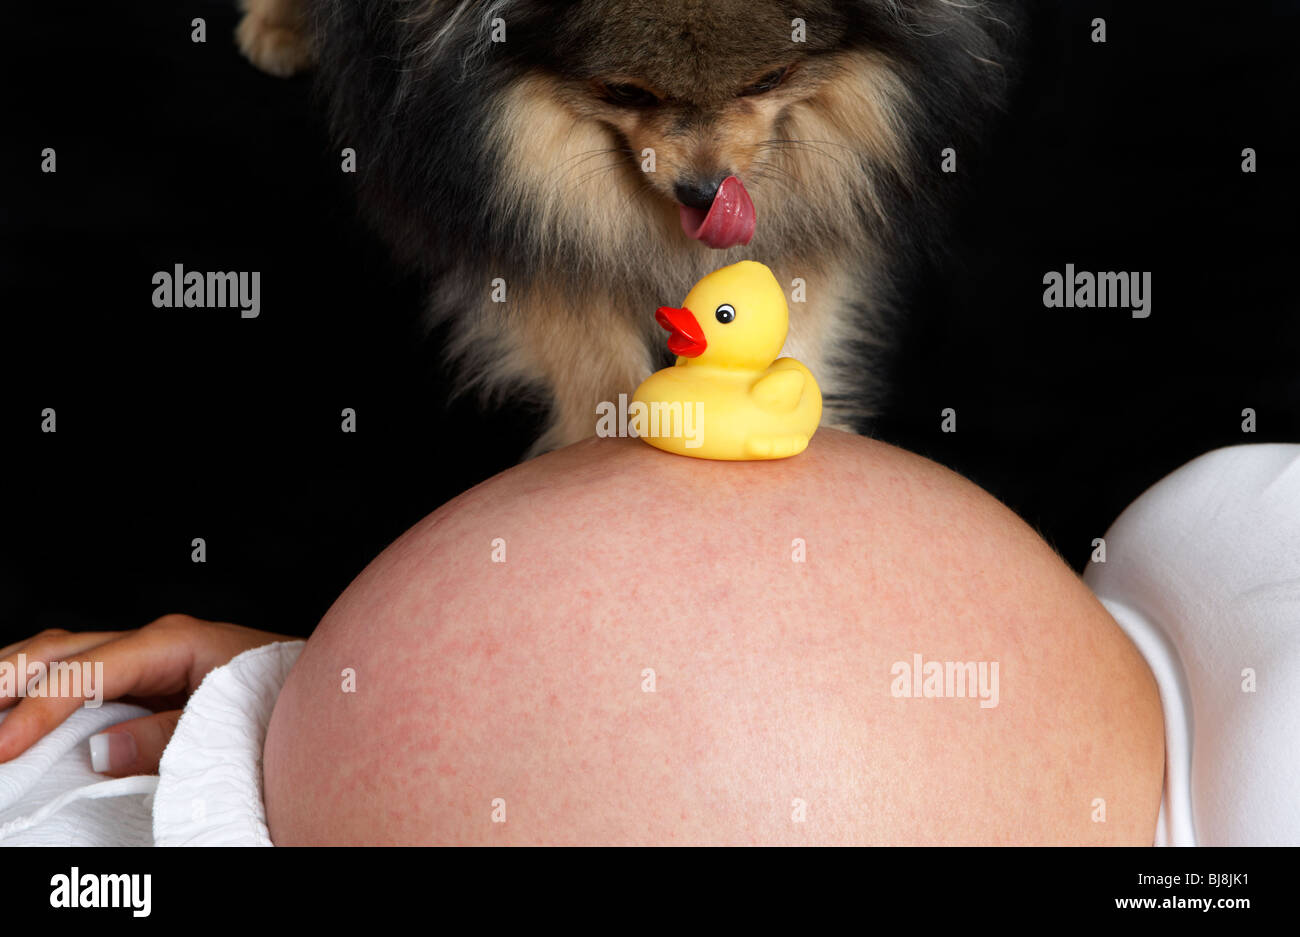 8 mese di gravidanza della donna di 30 anni di età con baby bump e piccolo Pomerania cane e giallo anatra giocattolo Foto Stock